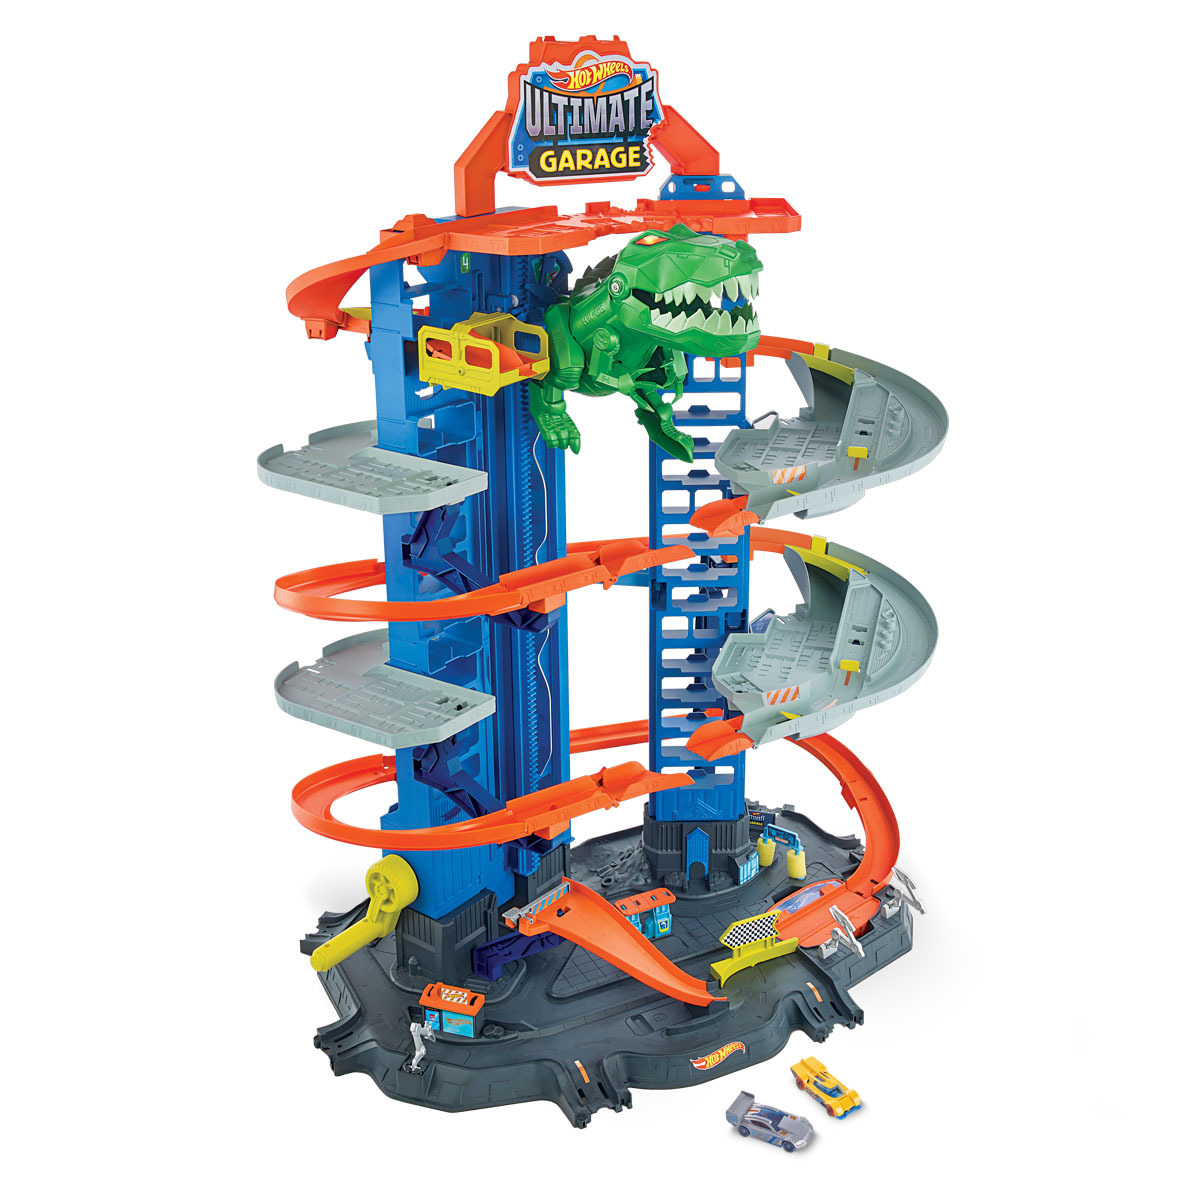  Hot Wheels Mega Garage Playset : Toys & Games